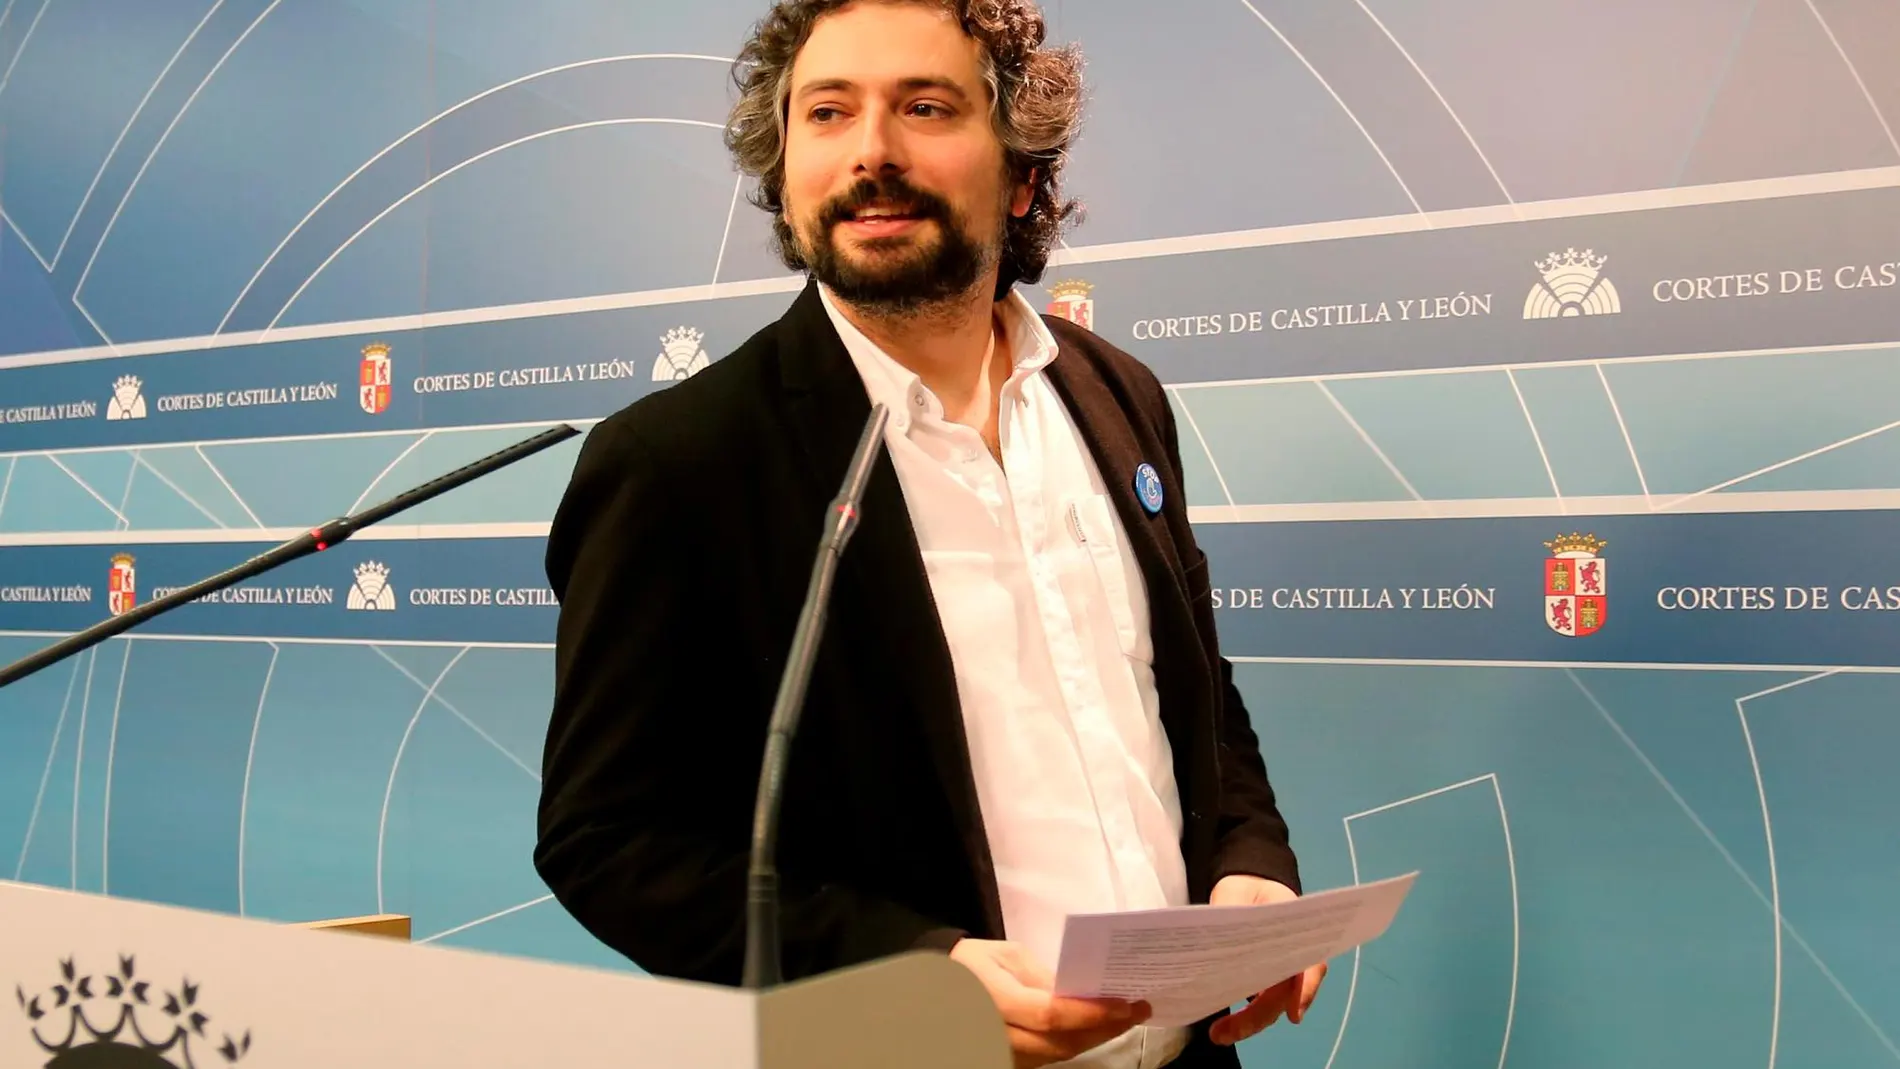 El coordinador de IUCyL, José Sarrión, presenta su candidatura